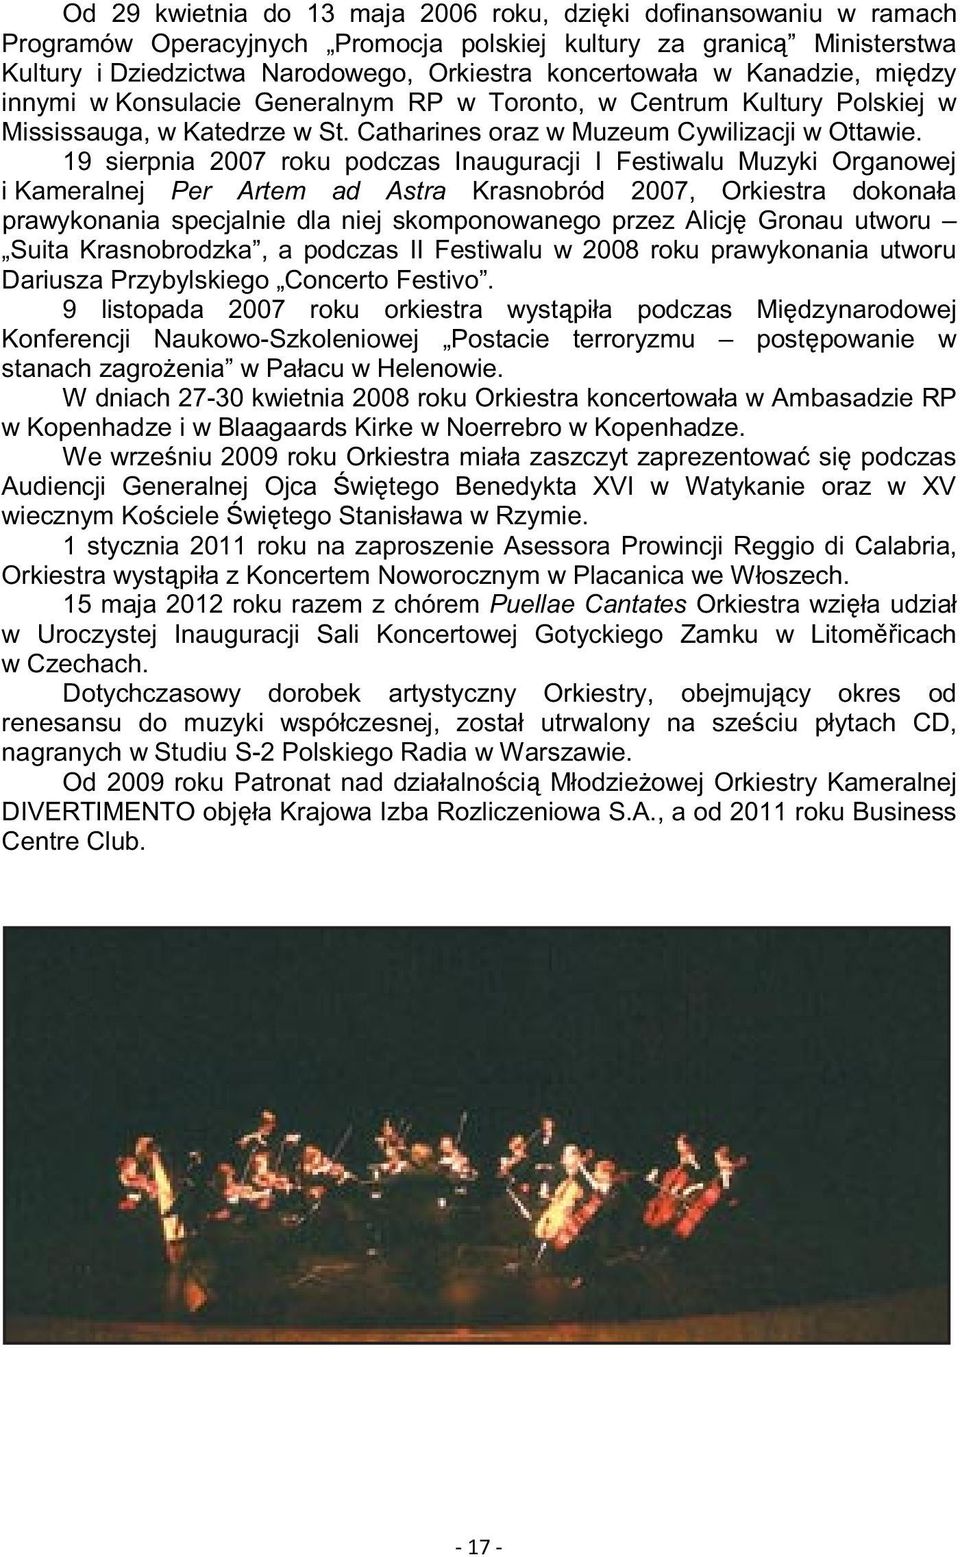 19 sierpnia 2007 roku podczas Inauguracji I Festiwalu Muzyki Organowej i Kameralnej Per Artem ad Astra Krasnobród 2007, Orkiestra dokonała prawykonania specjalnie dla niej skomponowanego przez Alicj